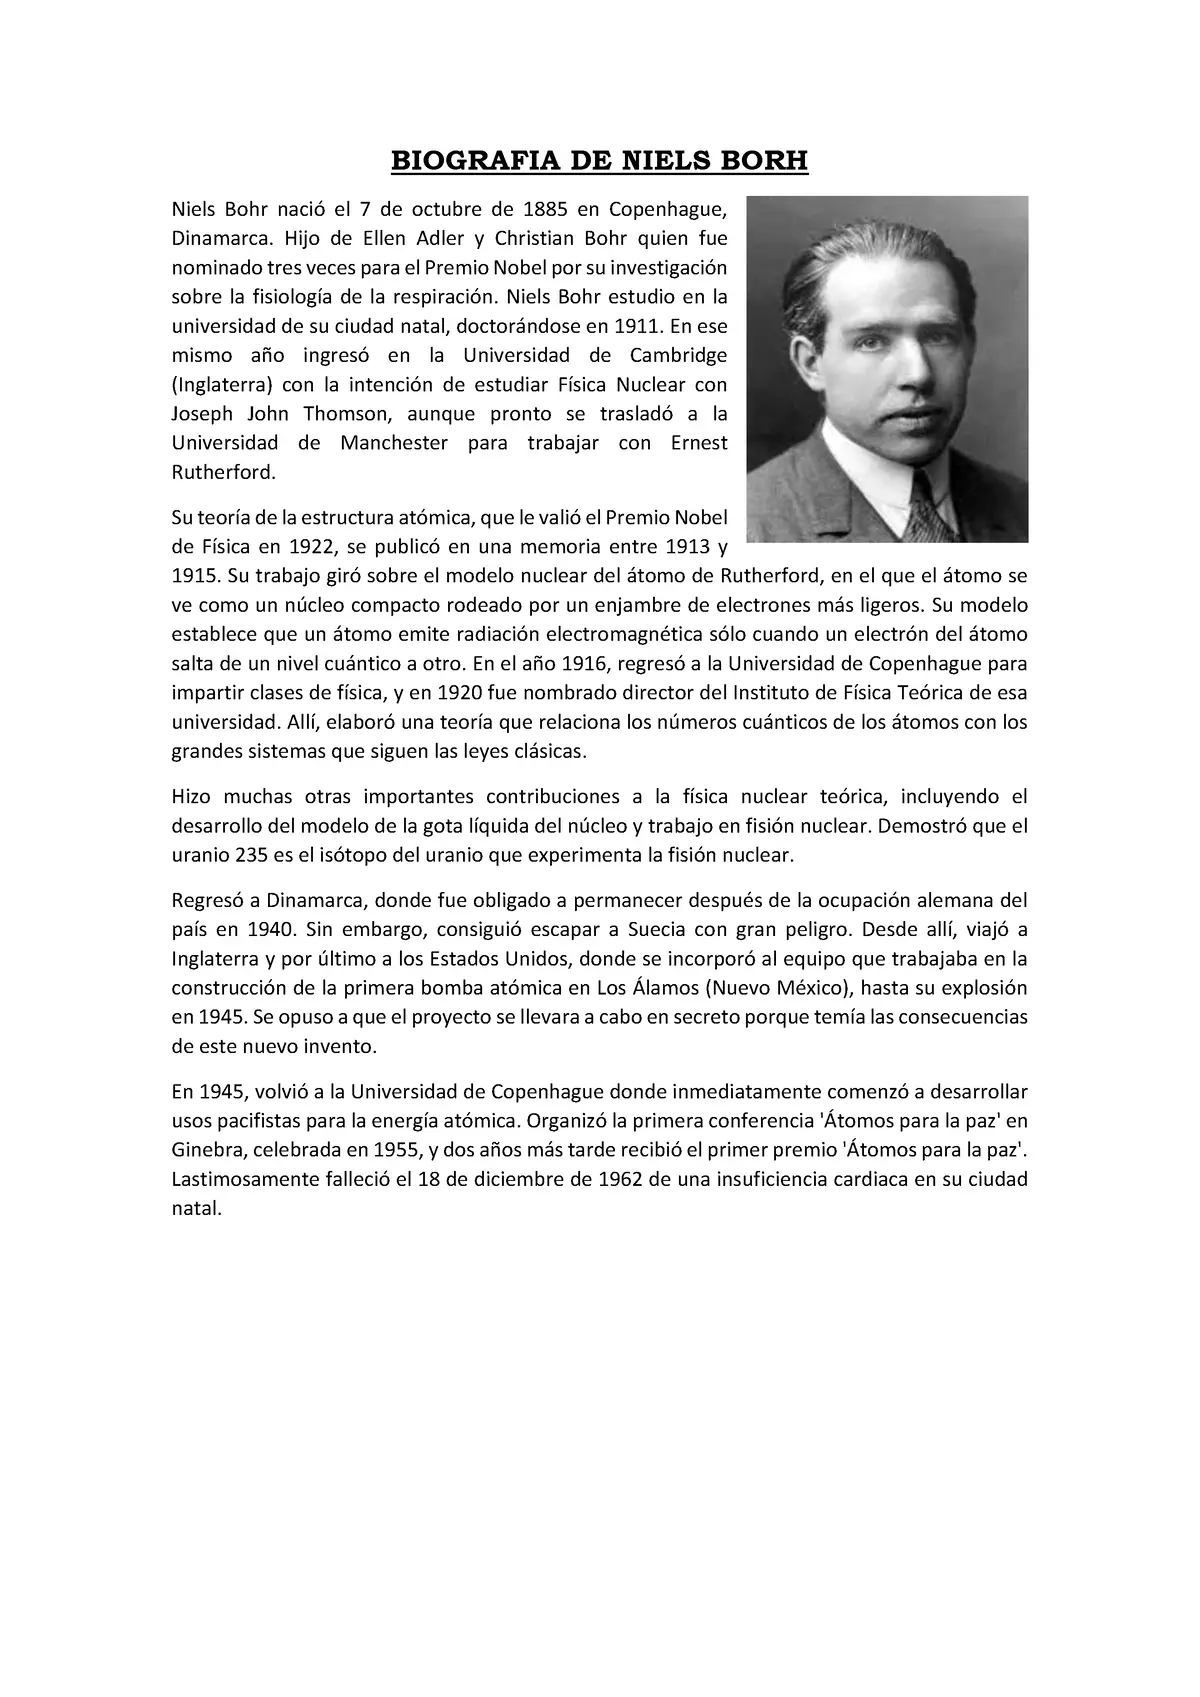 niels bohr biografia resumida - Quién es Niels Bohr y que descubrio